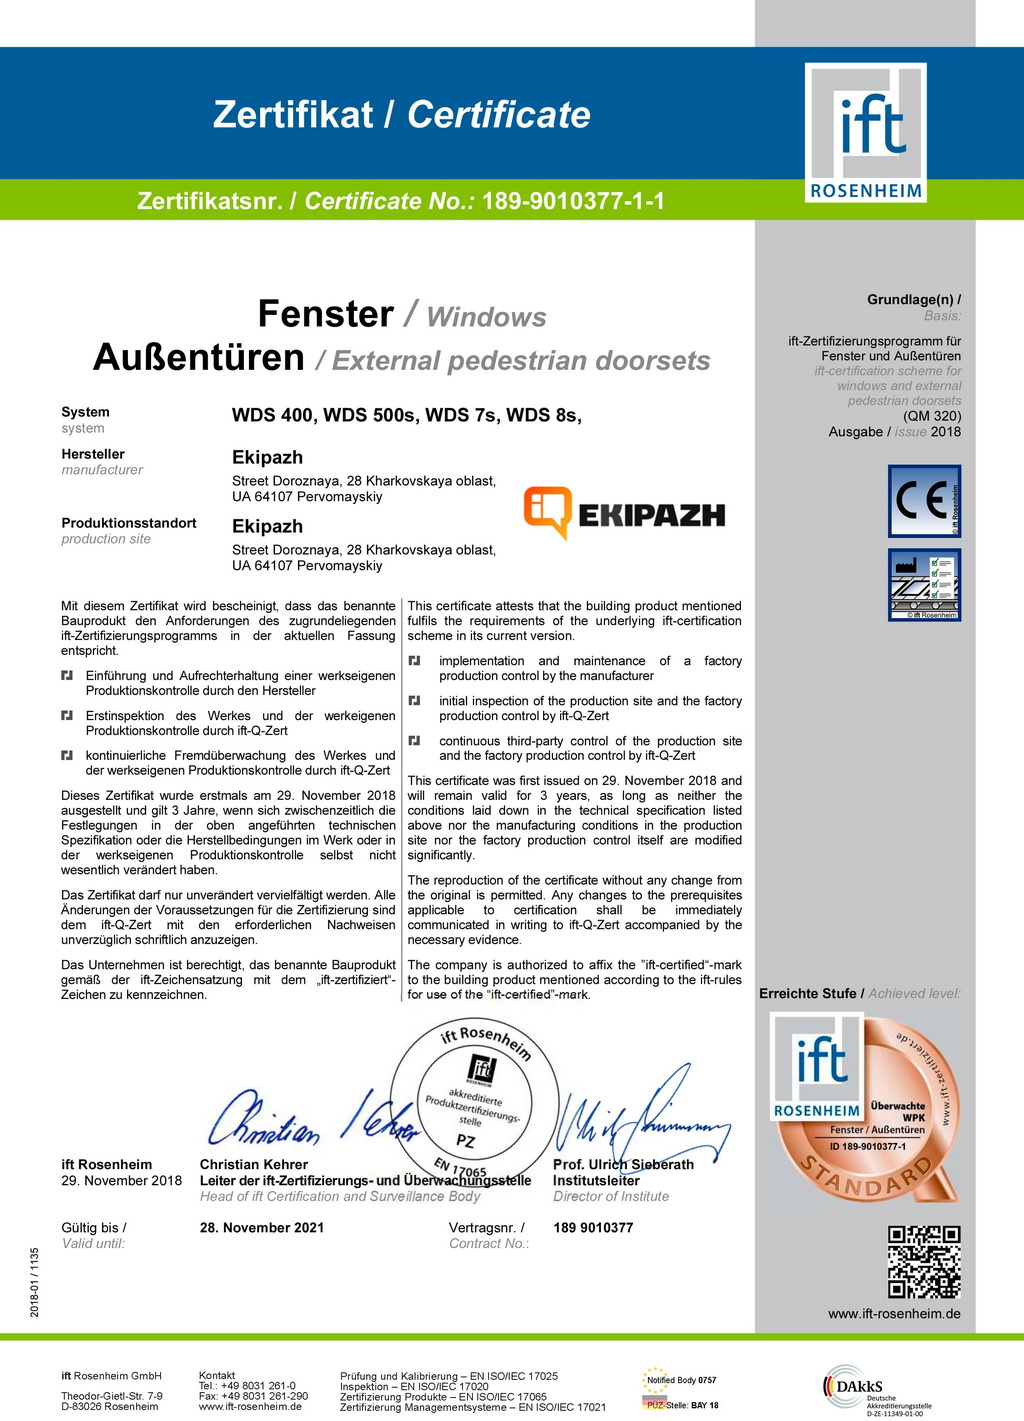 Сертифікат ROSENHEIM WDS s 400, 500S, 7S, 8S, який допомагає дилерам EKIPAZH при роботі з клієнтами